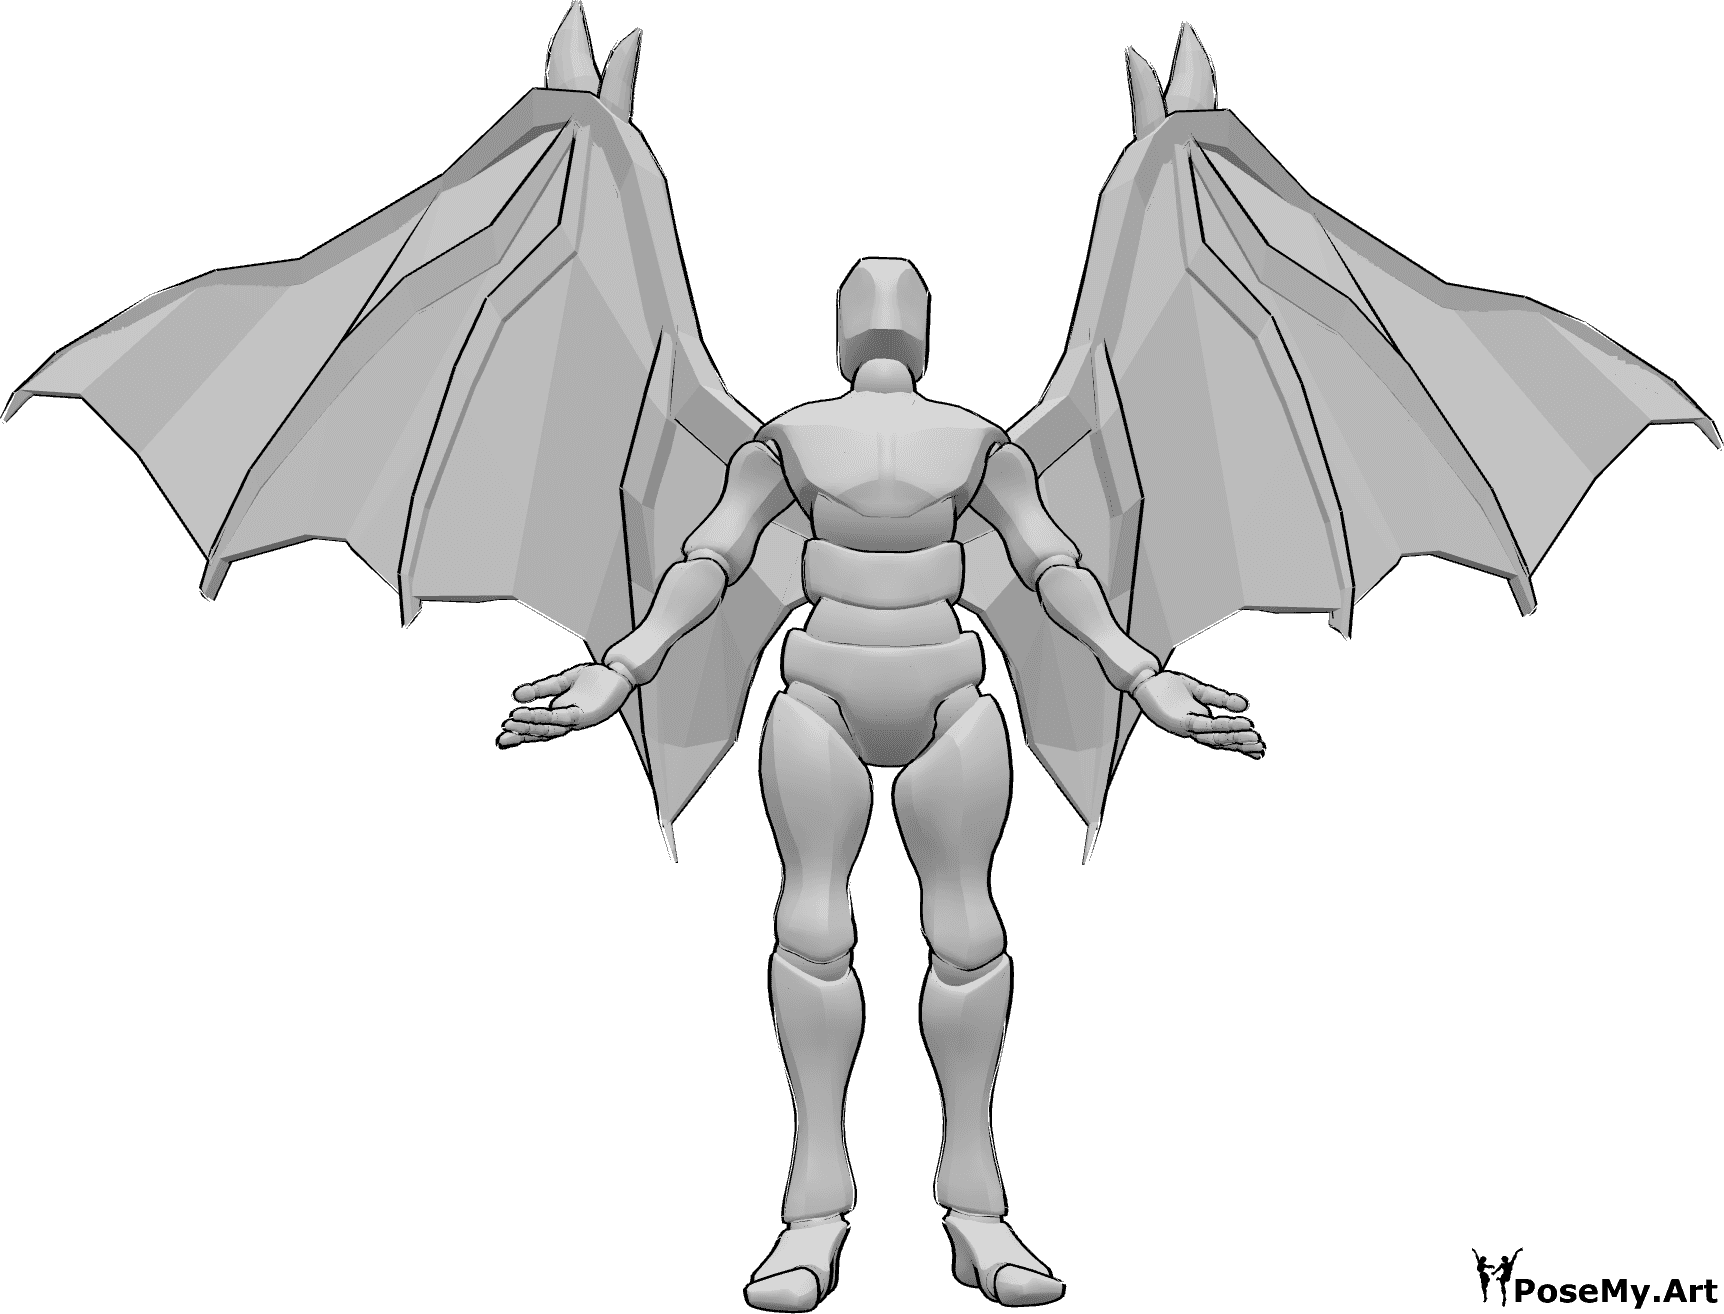 Referência de poses- Pose de pé com asas de diabo - Homem com asas de diabo está de pé, olhando para cima e levantando as mãos